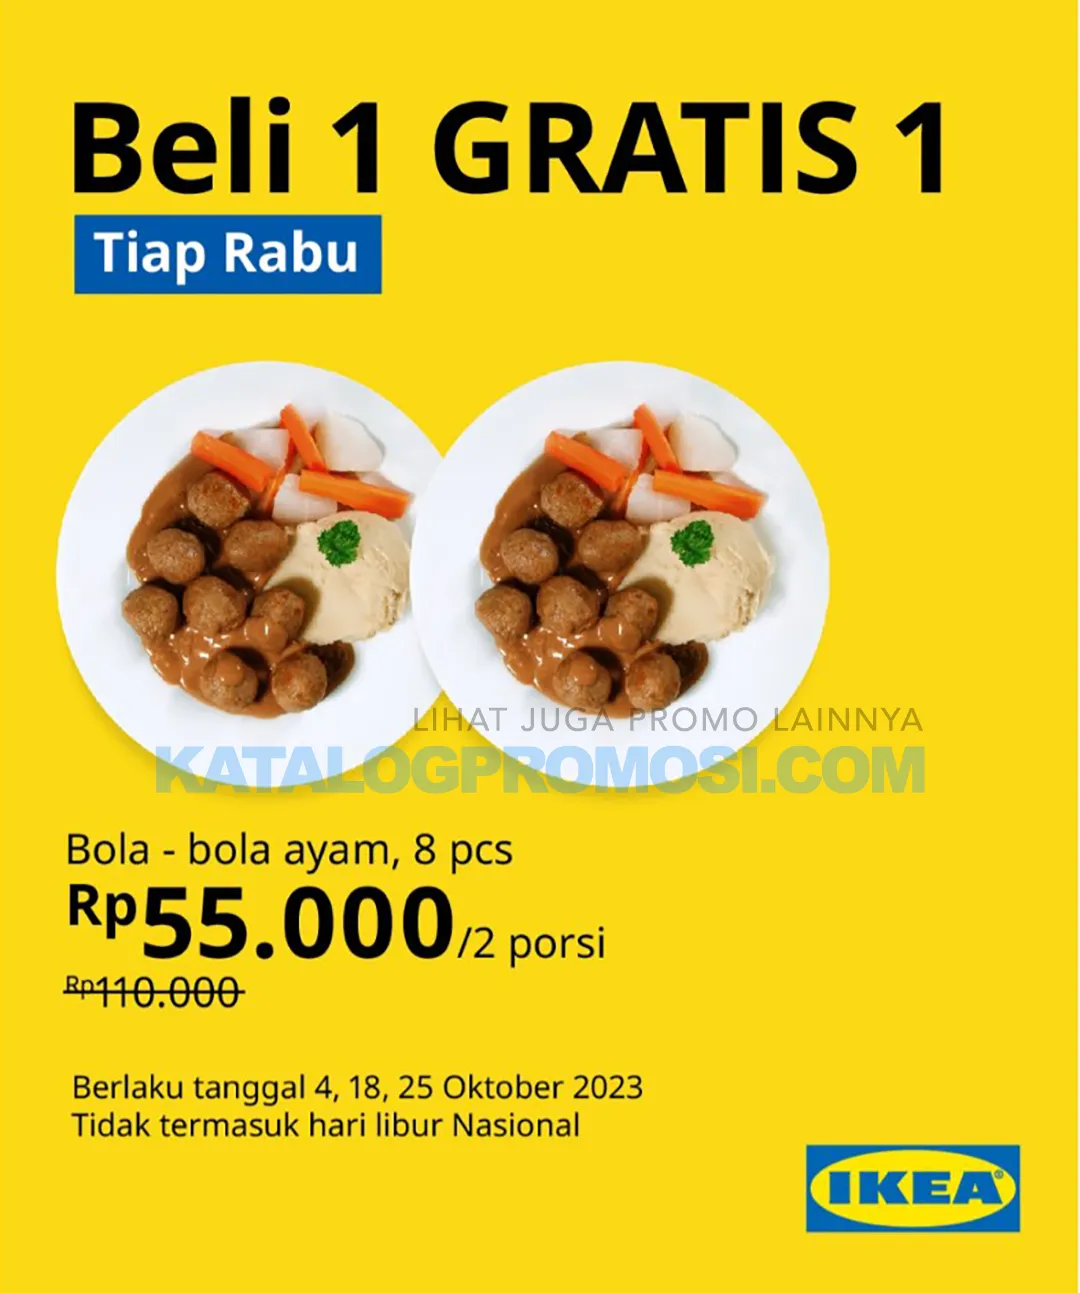 PROMO IKEA BELI 1 GRATIS 1 untuk BOLA BOLA AYAM